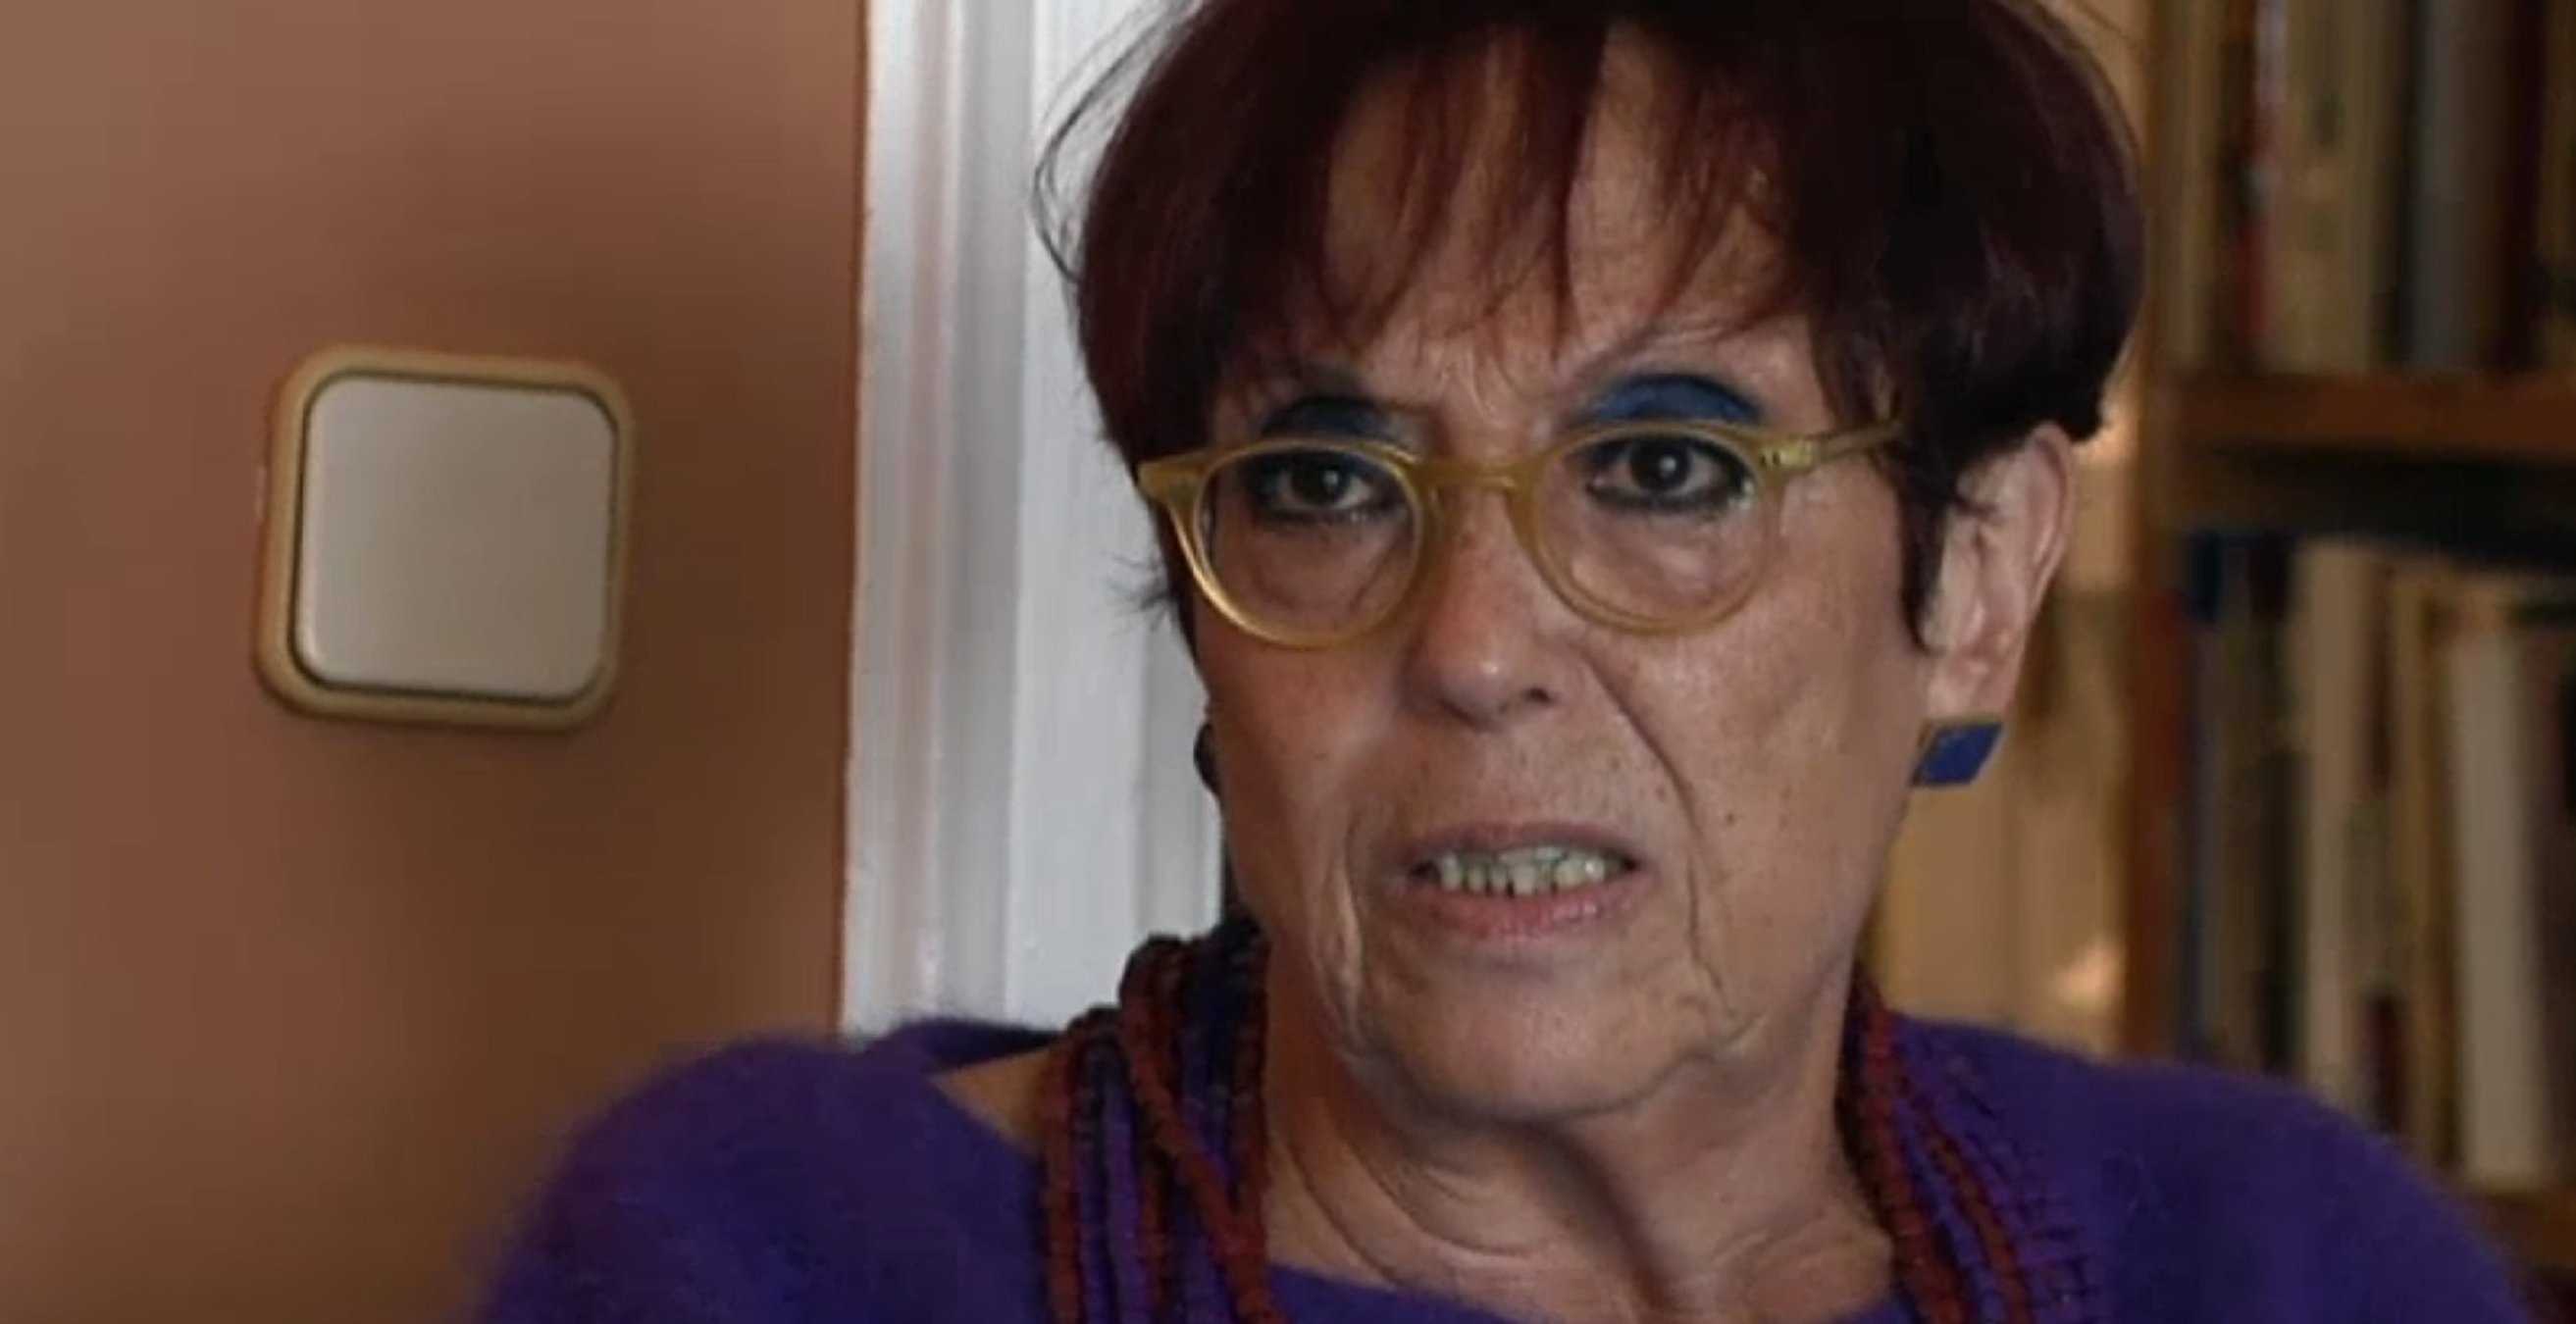 Escalofriante Maruja Torres, víctima de violencia machista: "caía una ostia"